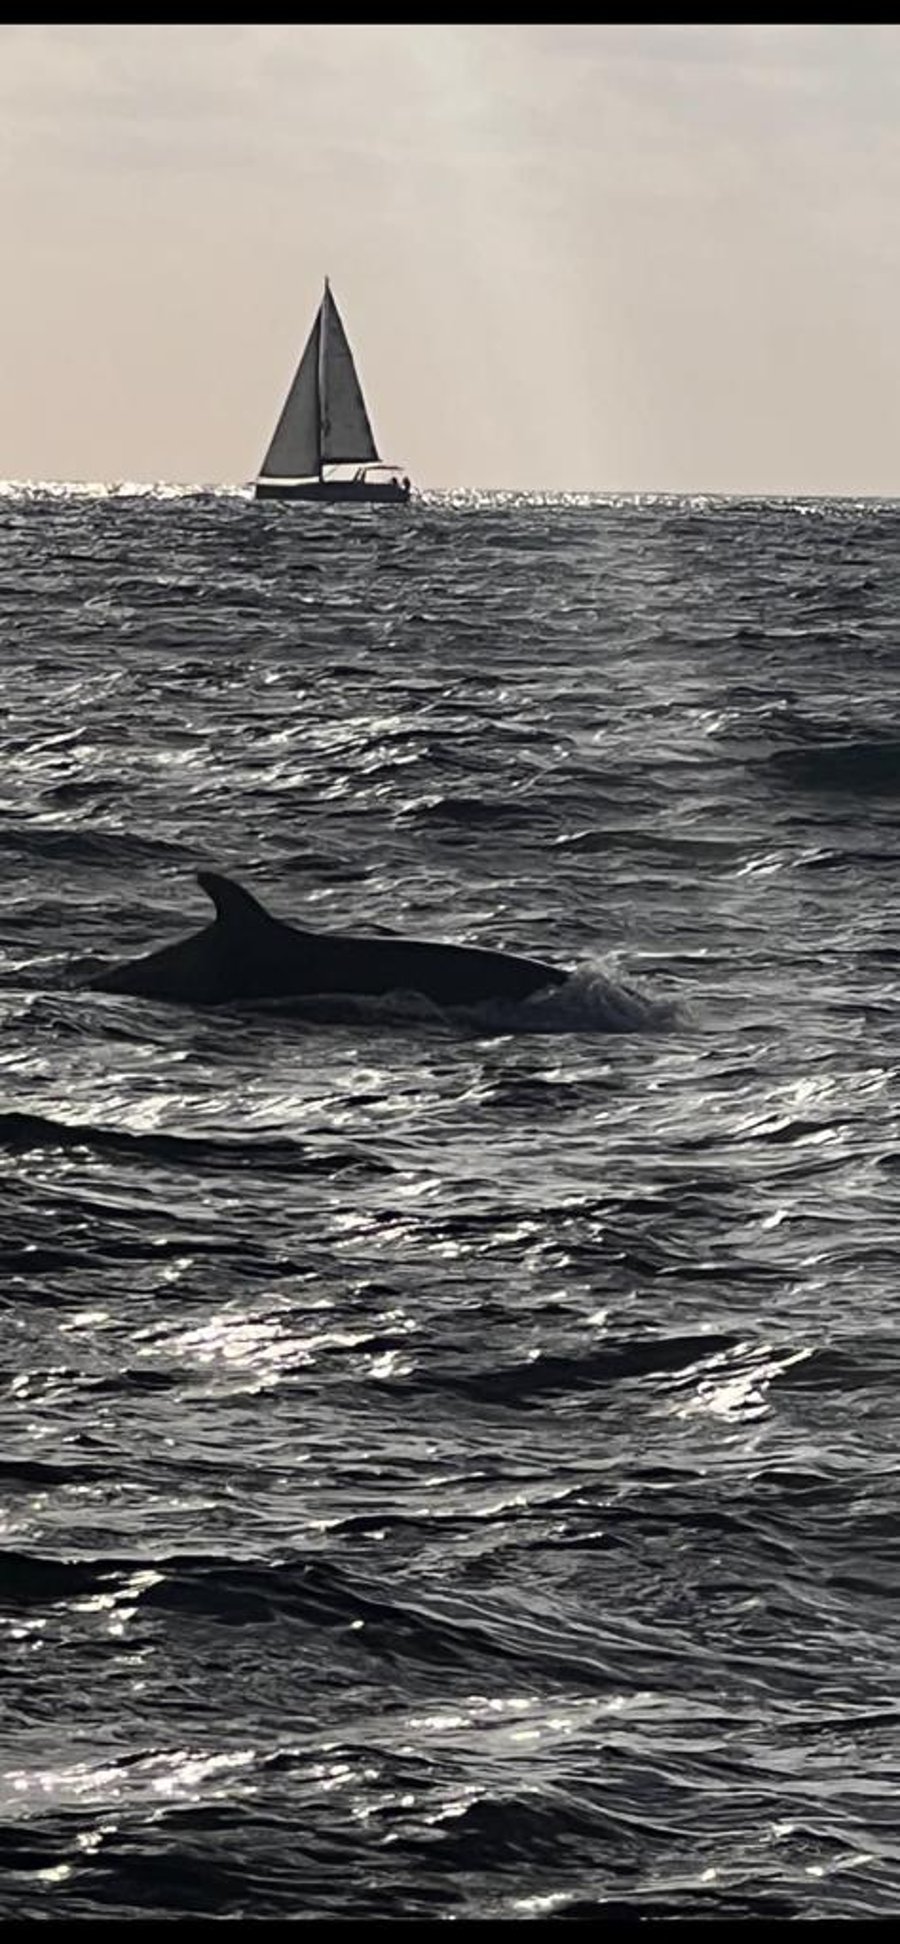 תיעוד נדיר: להקת דולפינים נצפתה מול חופי הרצליה • צפו